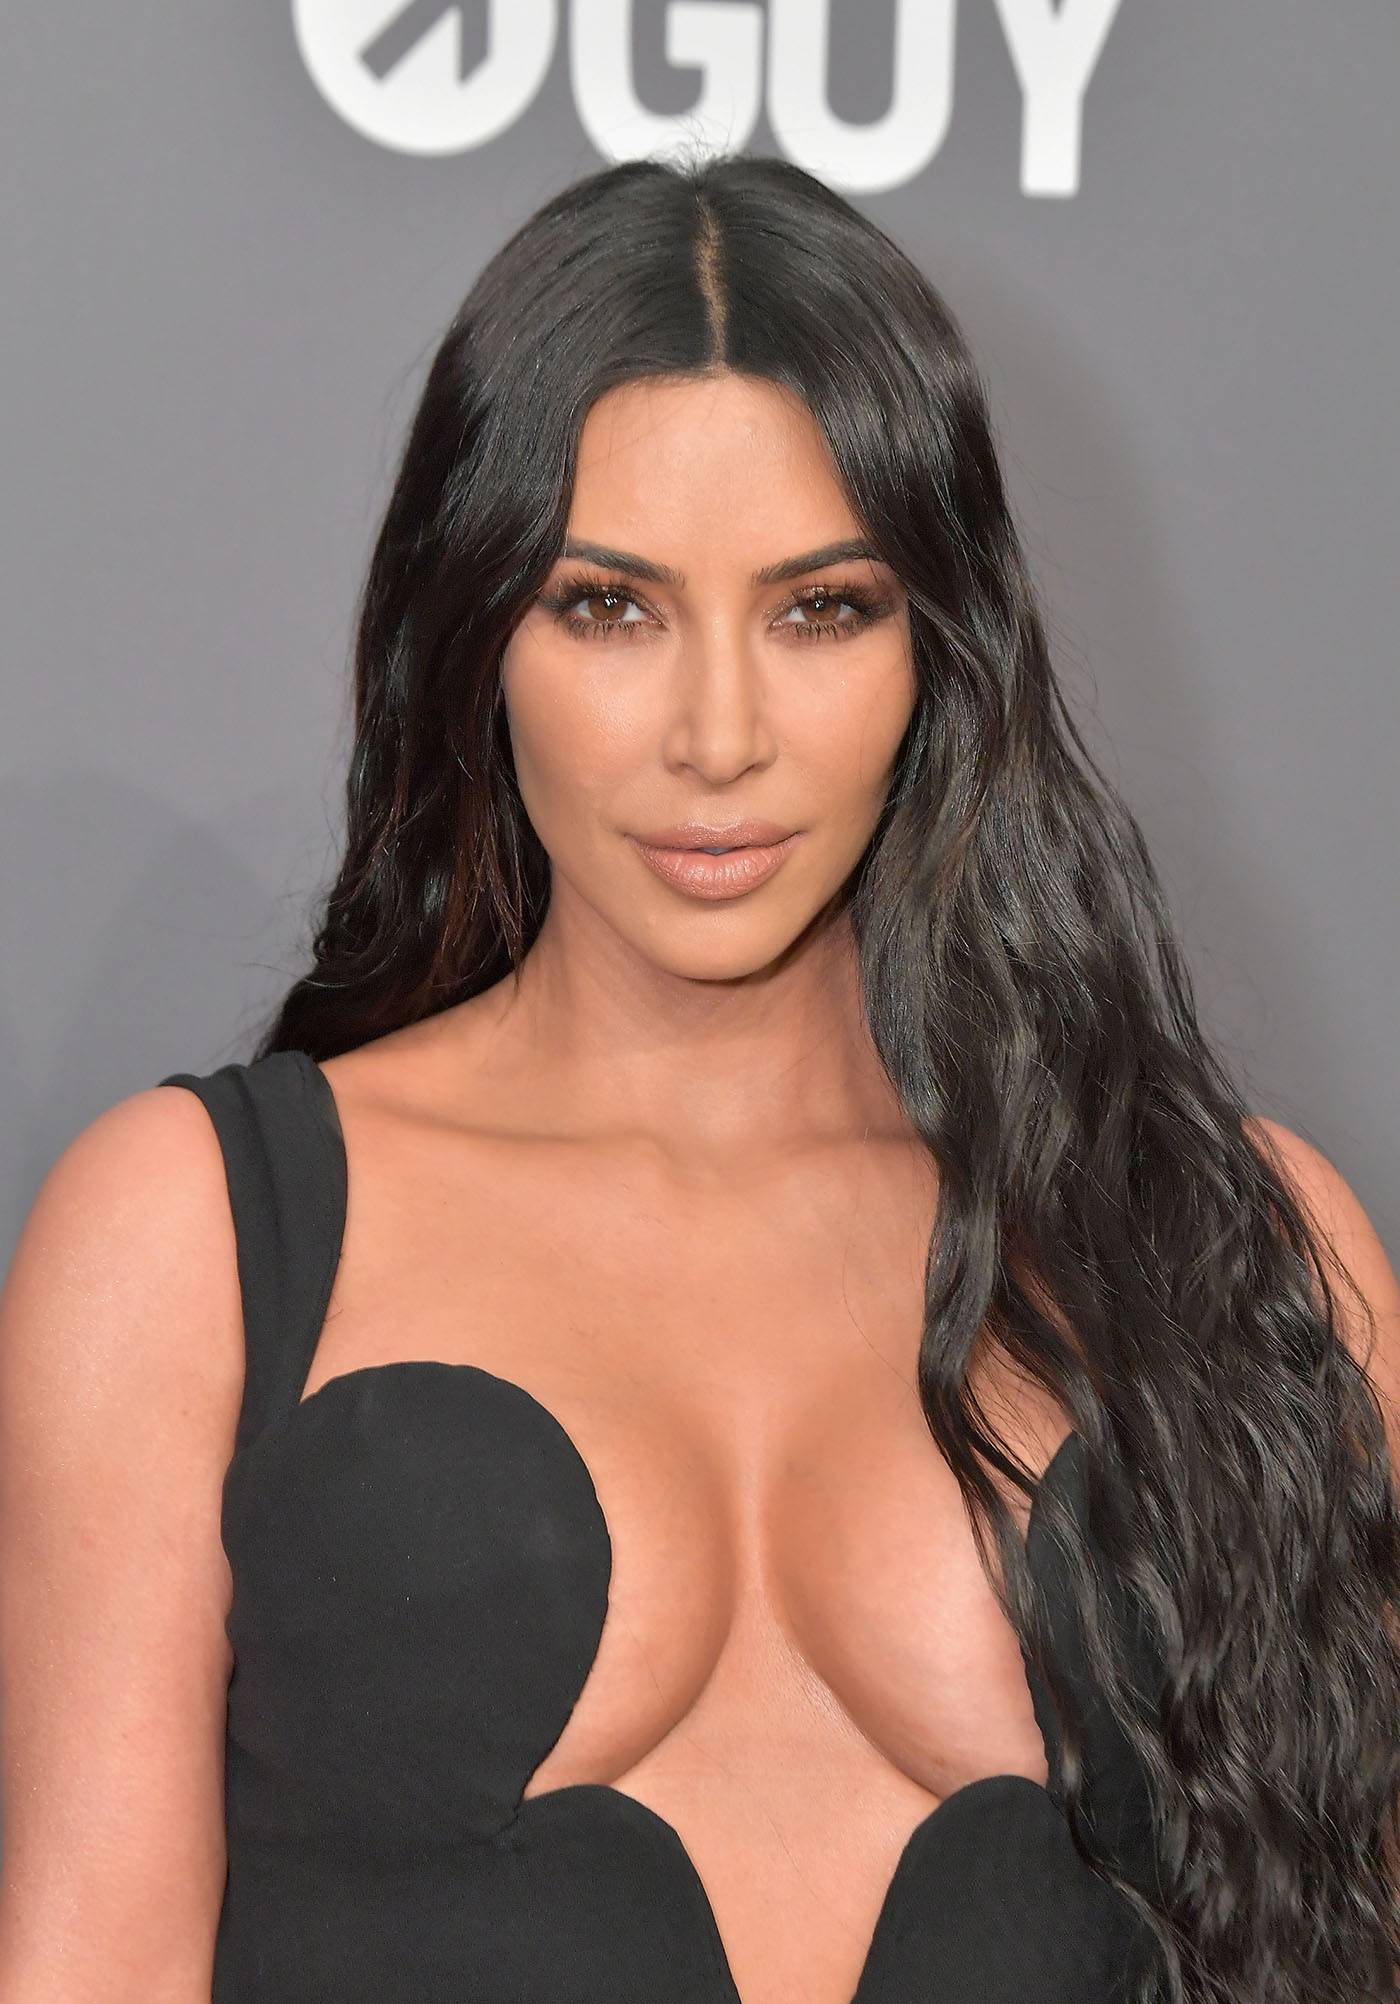 Kim Kardashian w bieliźnianej stylizacji na weselu / Getty Images